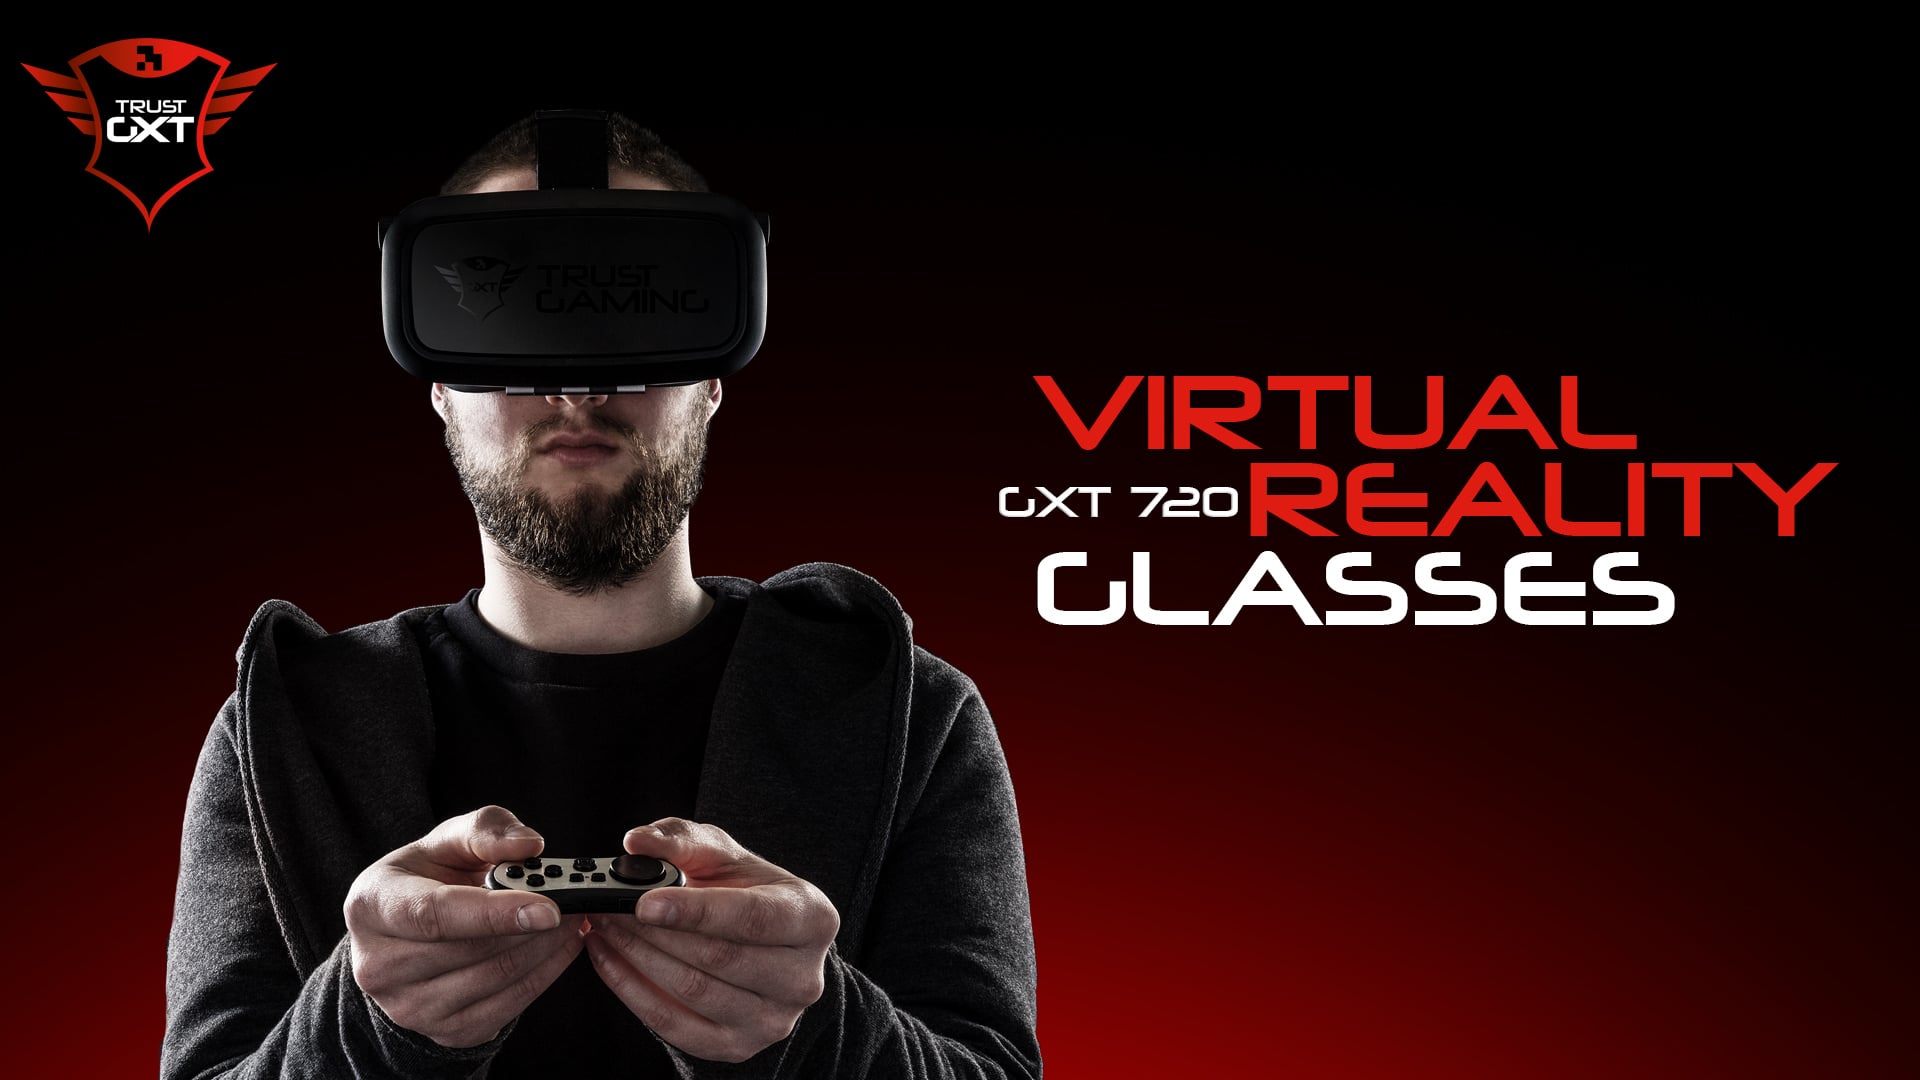 Trust GXT Gaming VR Glasses on Vimeo